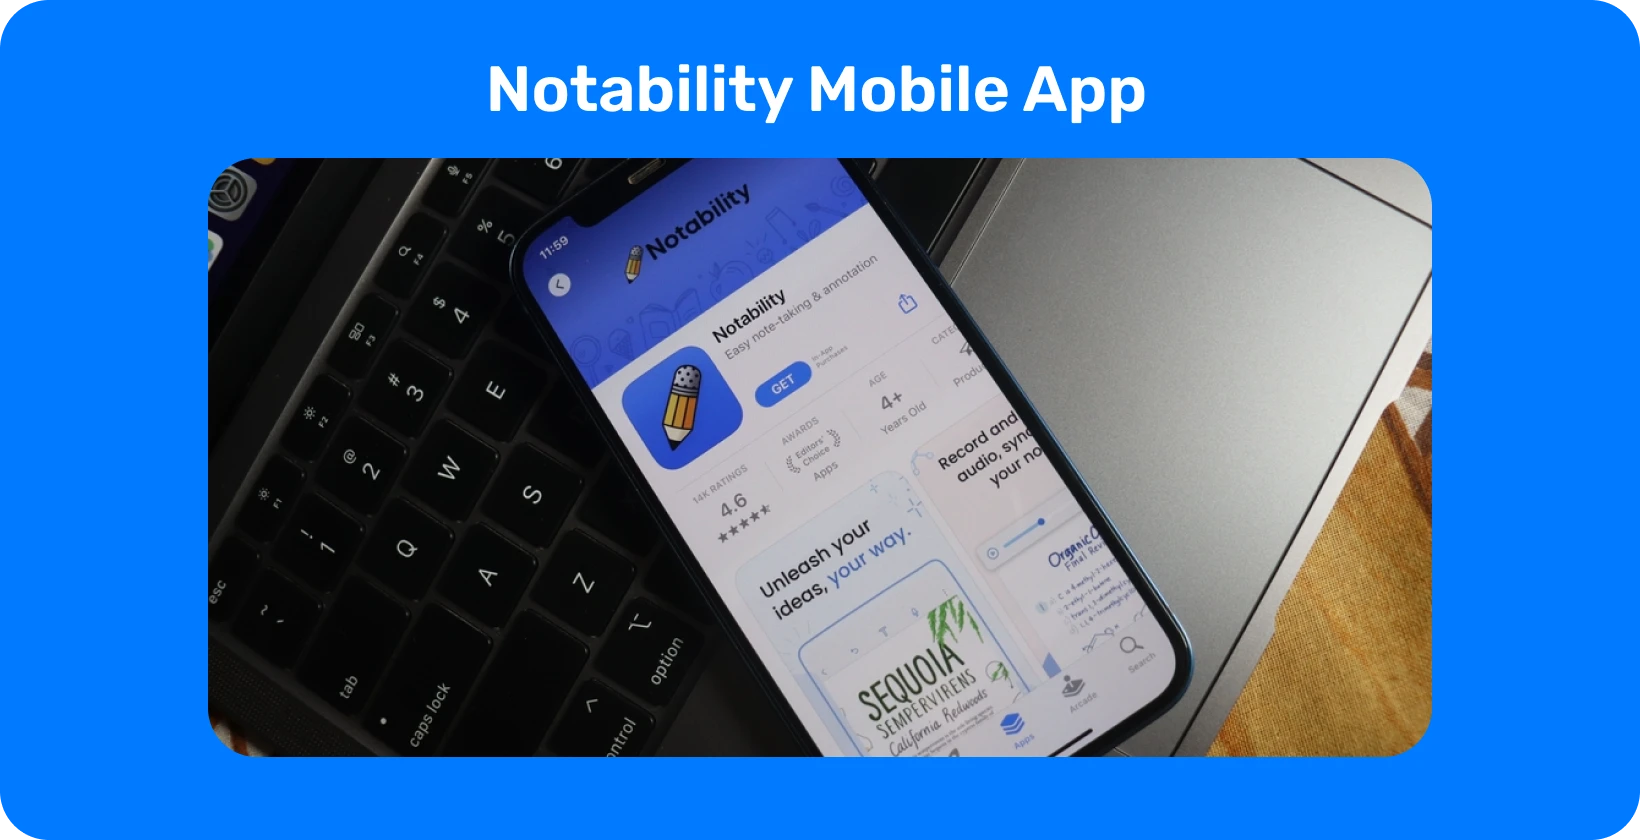 Notability التطبيق على شاشة الهاتف الذكي مع ميزة النسخ ، وعرض قدرات تحويل الصوت إلى نص.